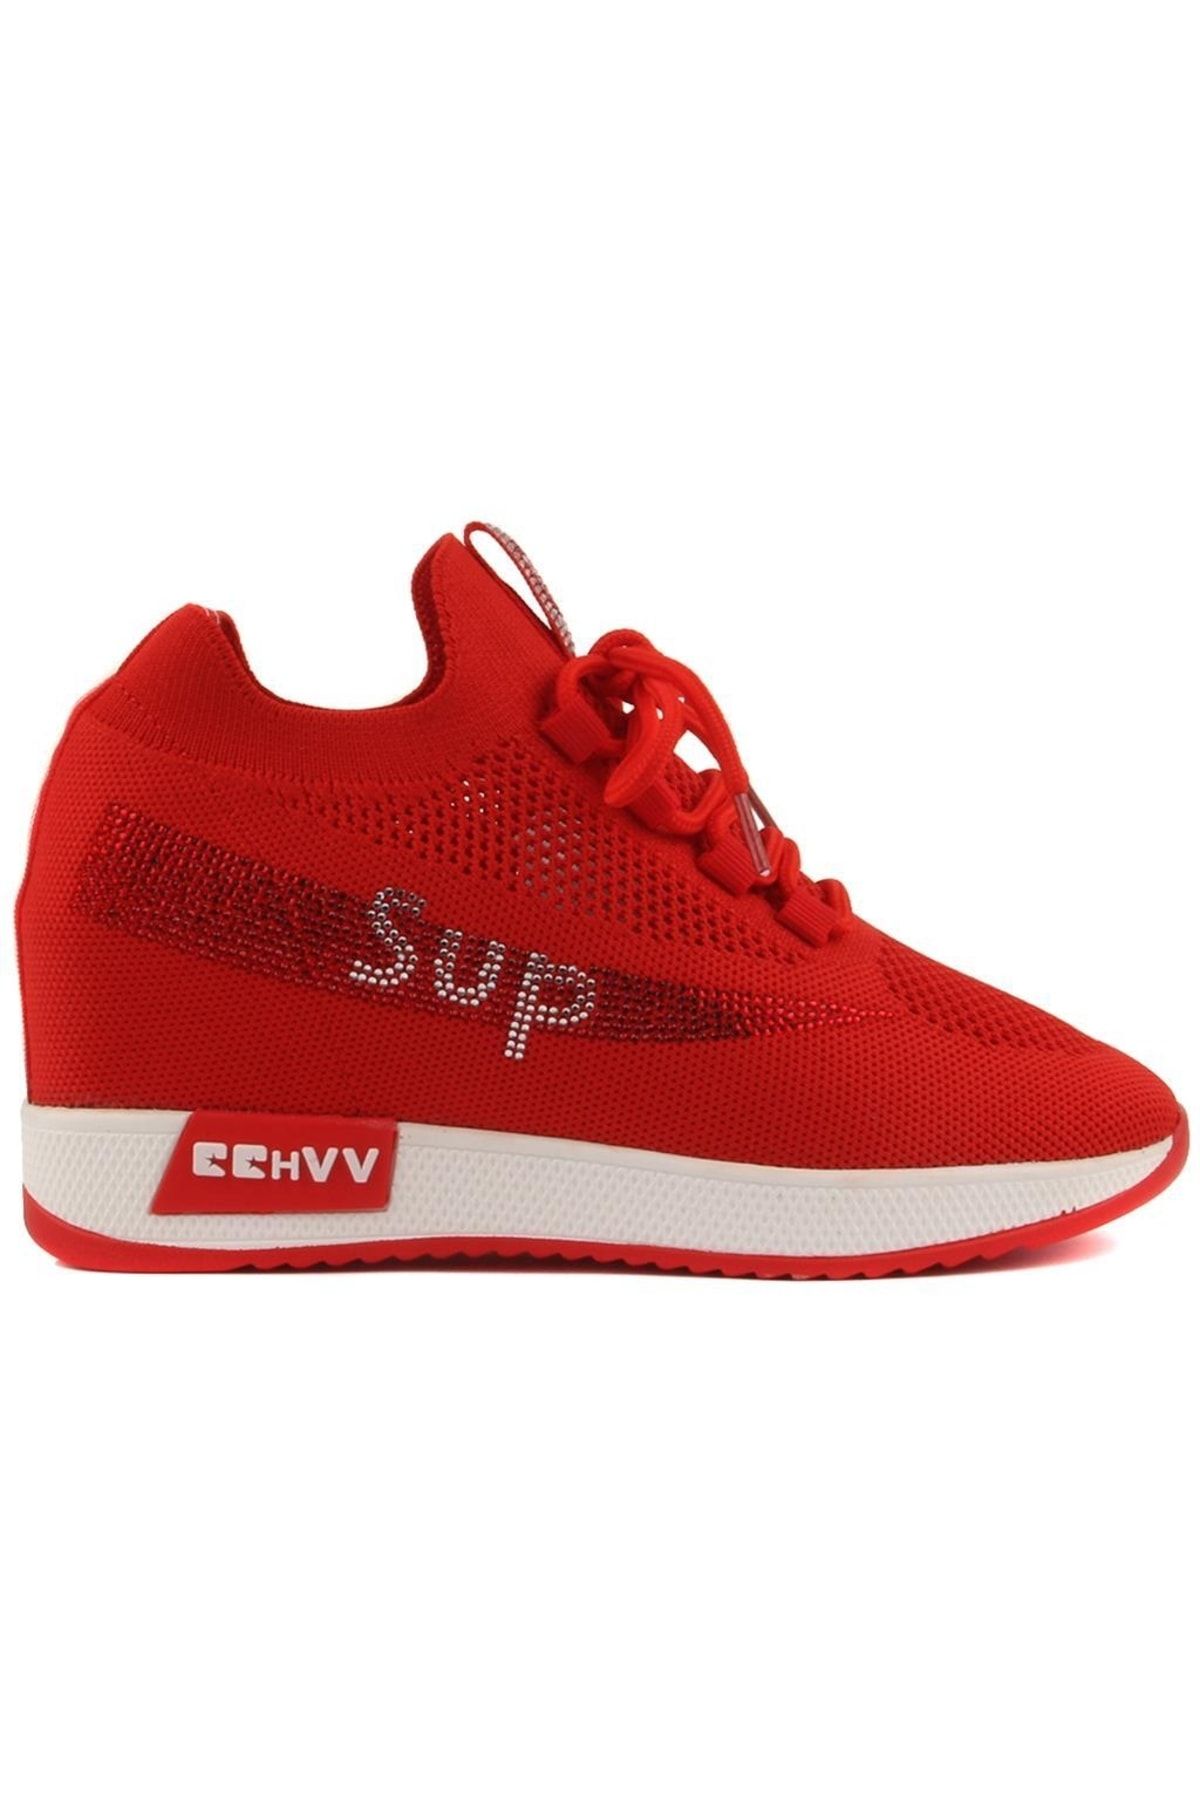 Sail Lakers Guja - Kırmızı Renk Bağcıklı Kadın Sneaker